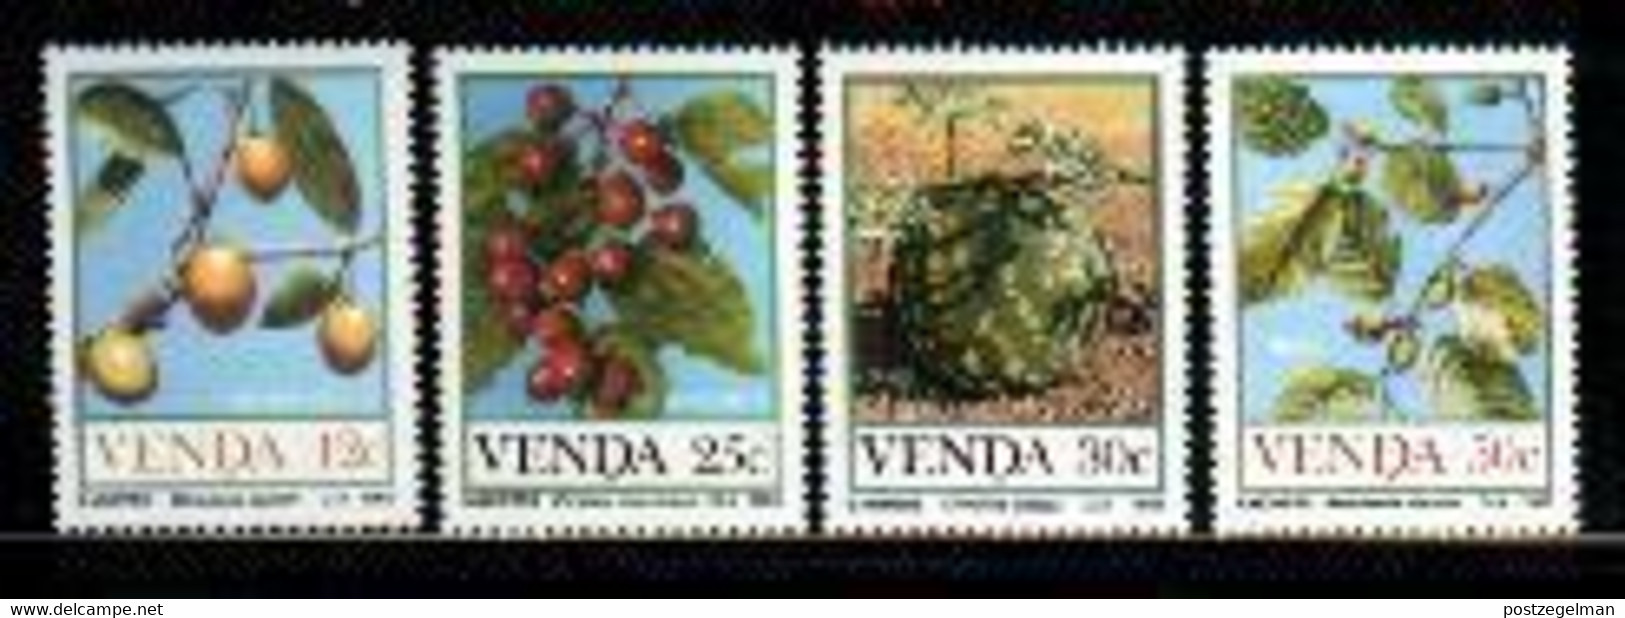 VENDA, 1985, MNH Stamps, Food From The Veld, Michel 112-115, - Venda